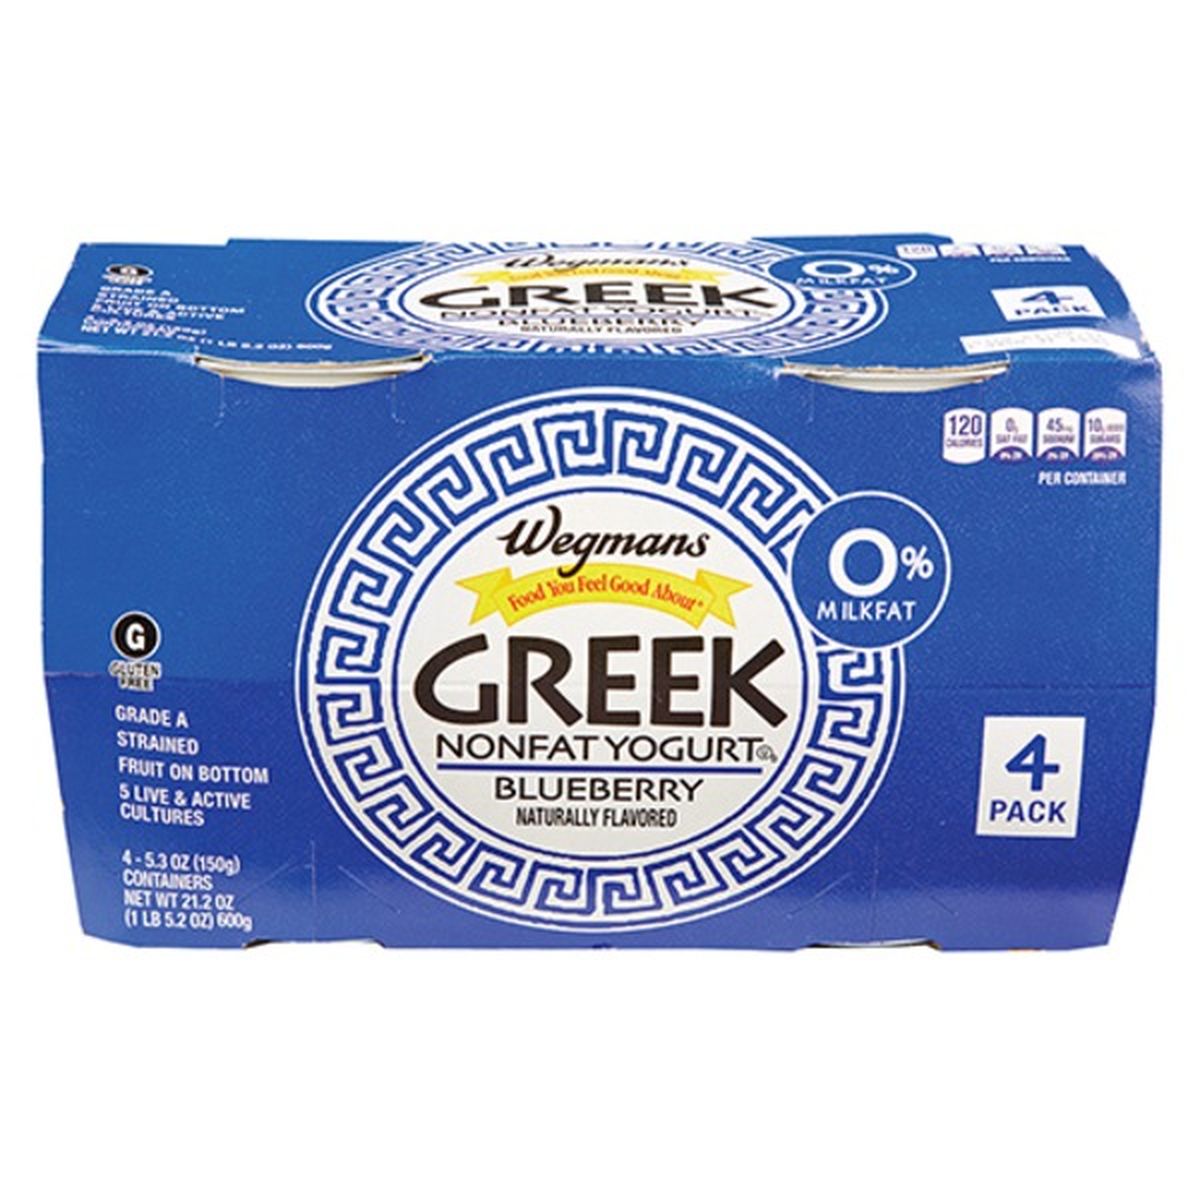 Calories in Wegmans Greek Blueberry Nonfat Yogurt, 4 PACK